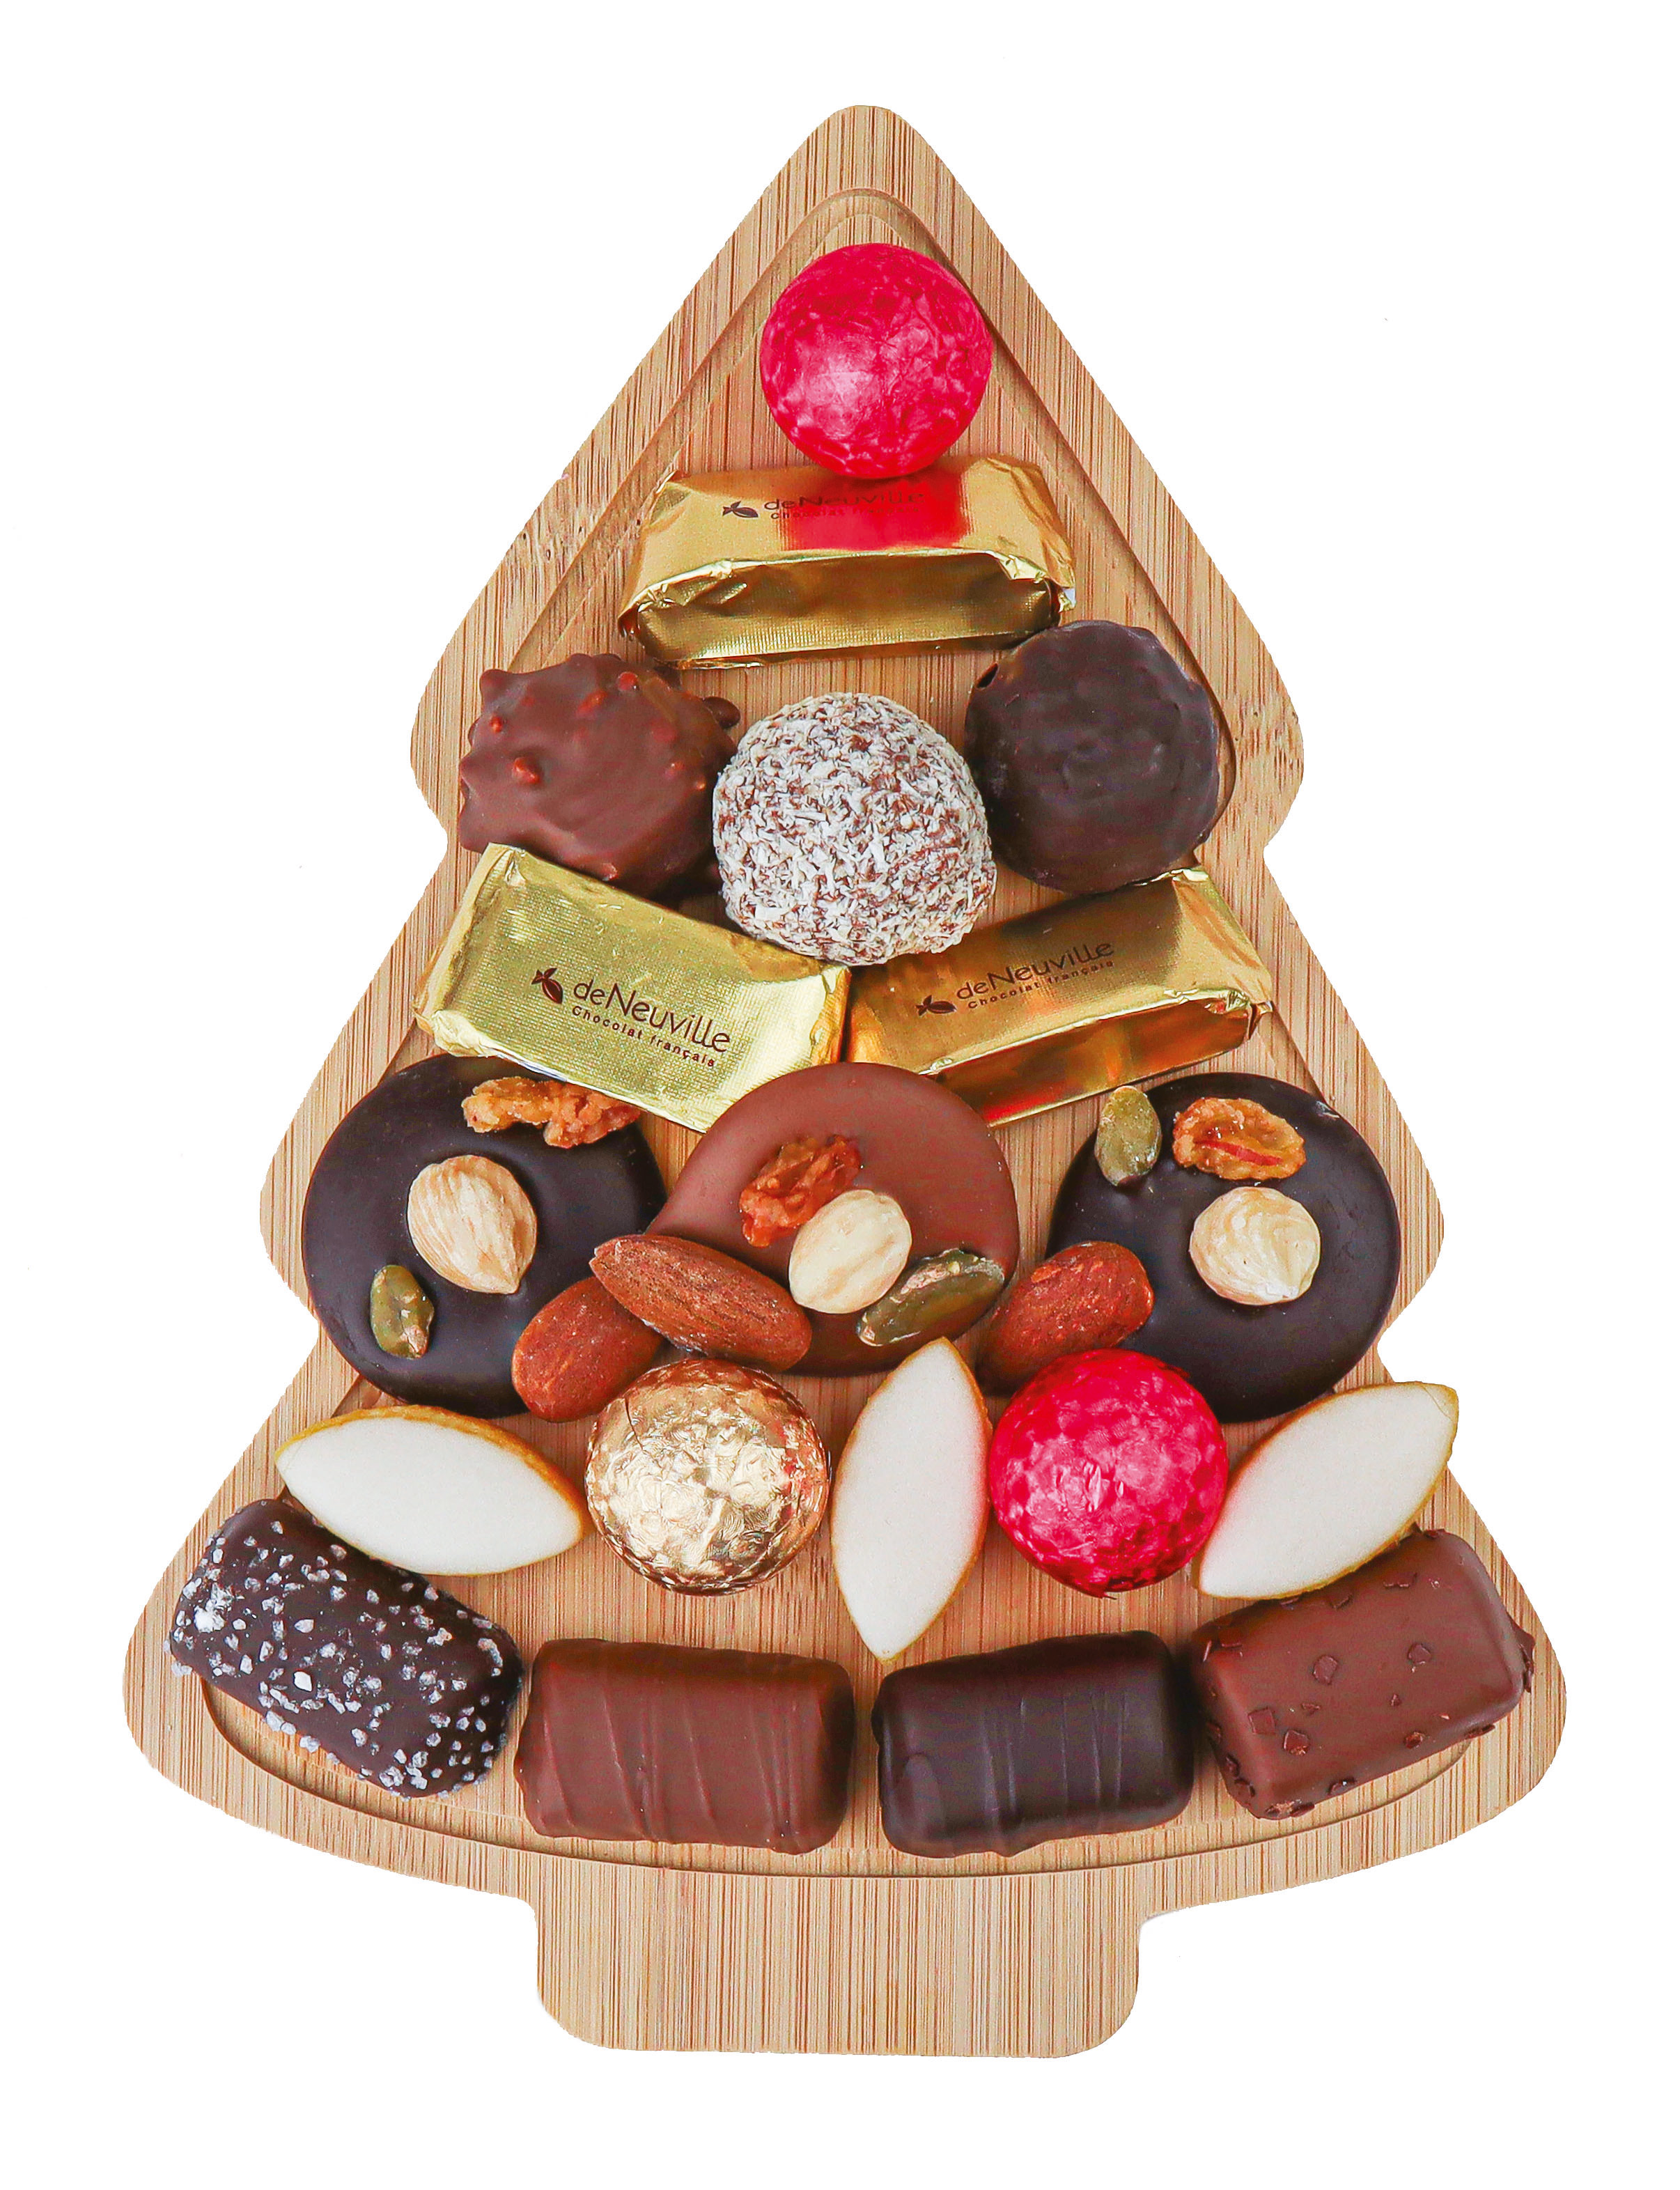 Coffret de chocolat de Noël 60 chocolats - La Maison du Chocolat